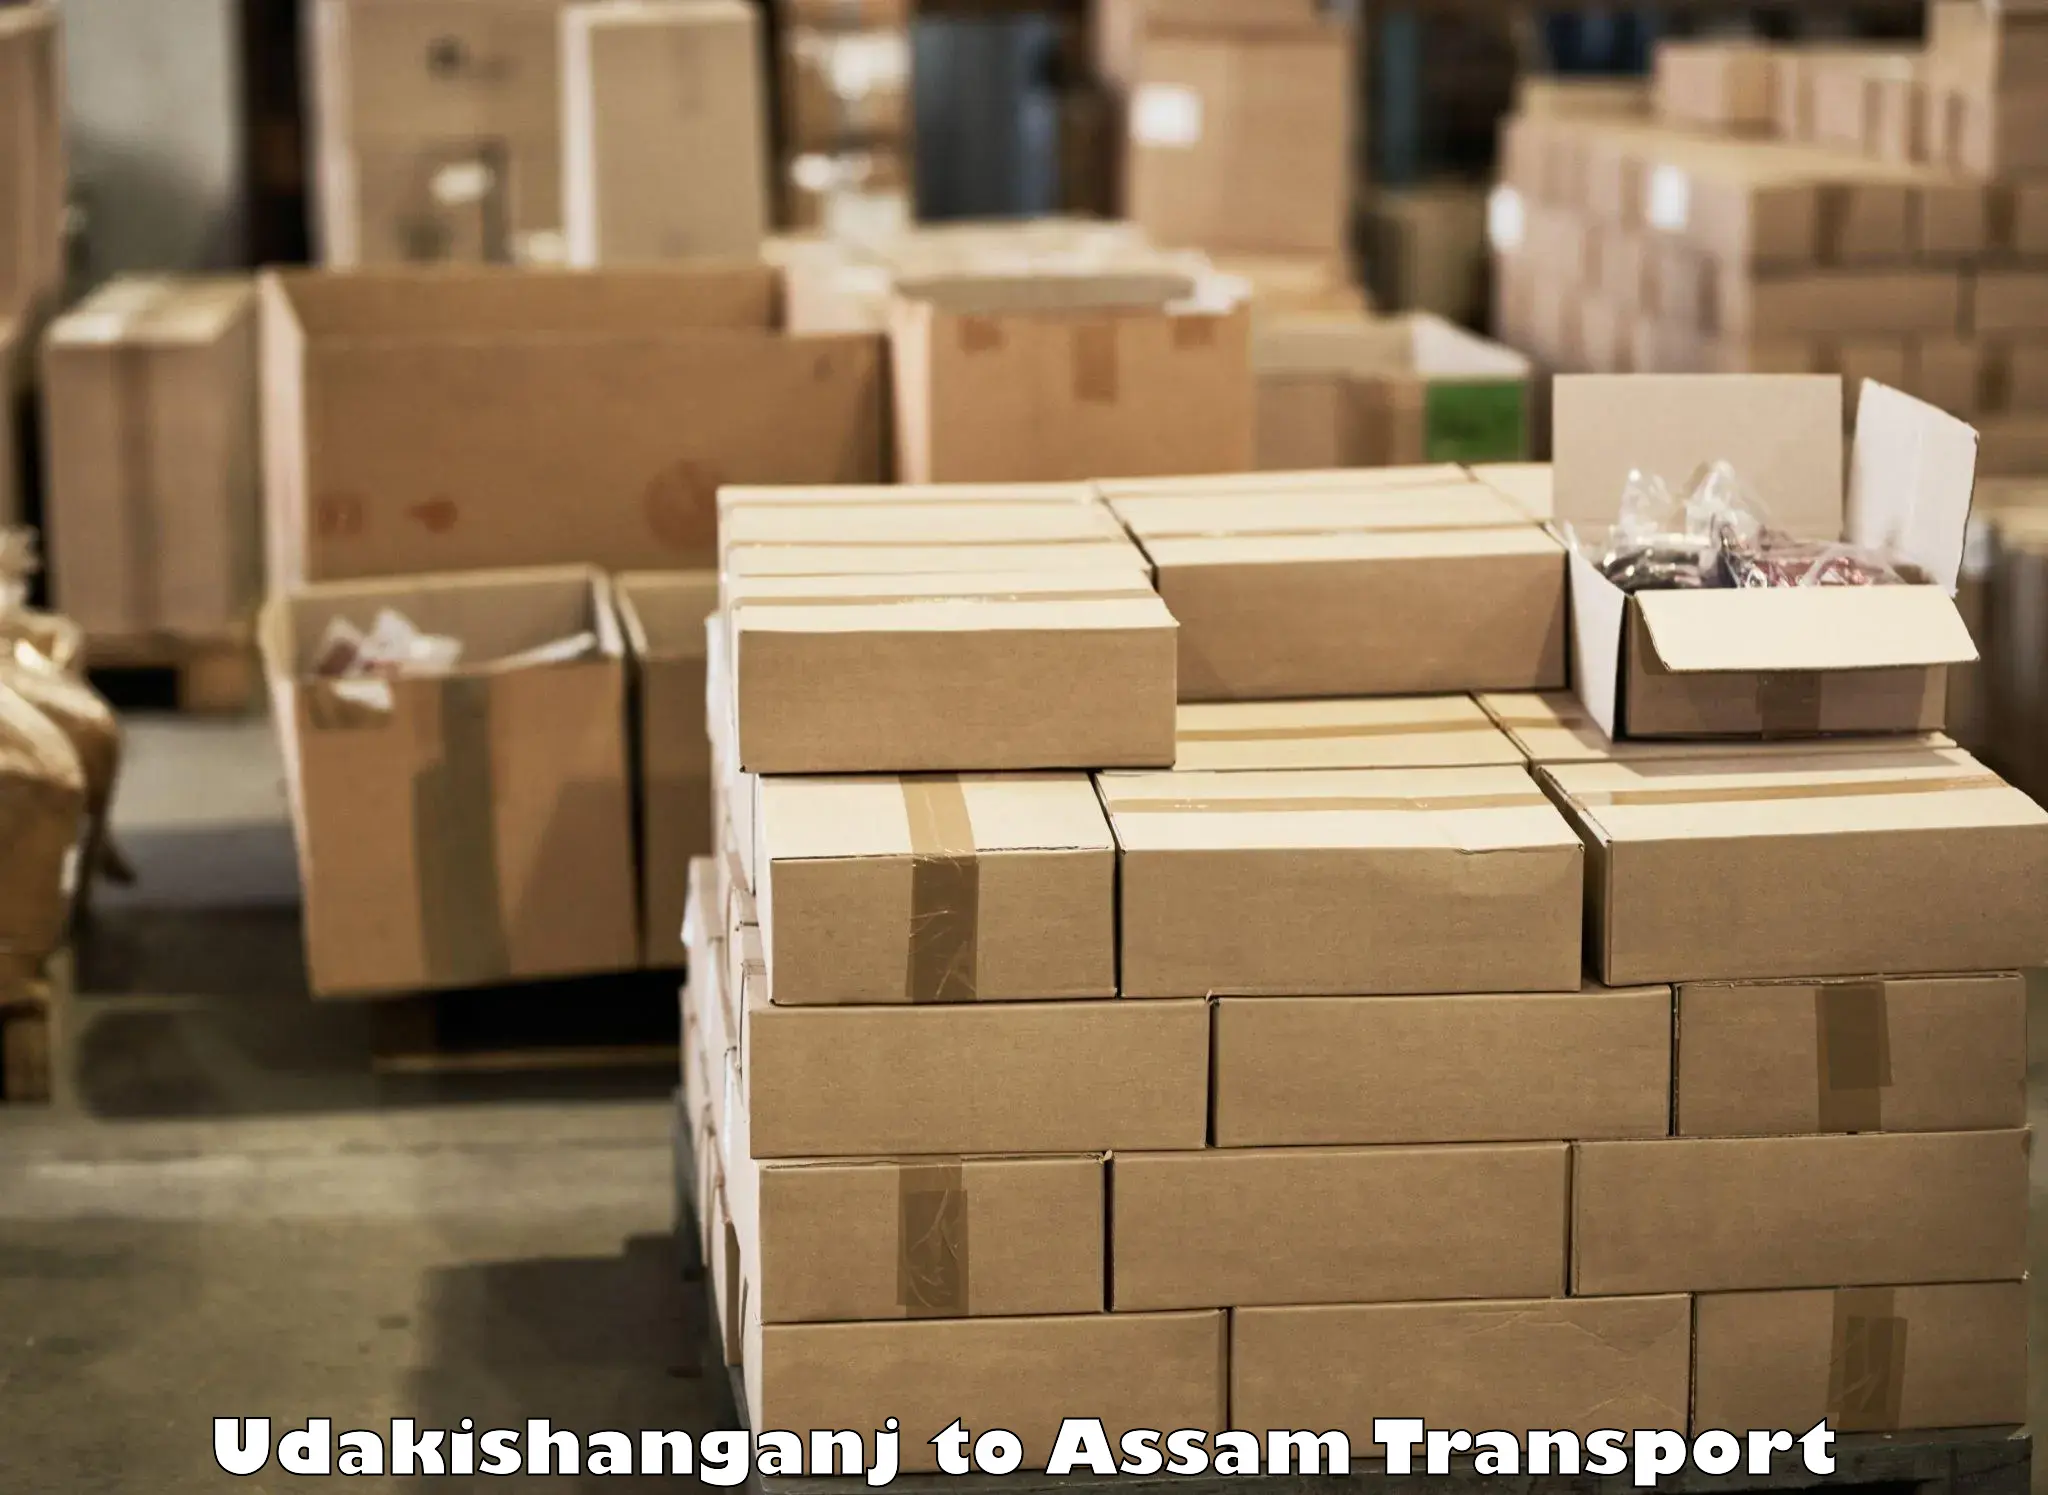 Container transport service Udakishanganj to Lakhipur